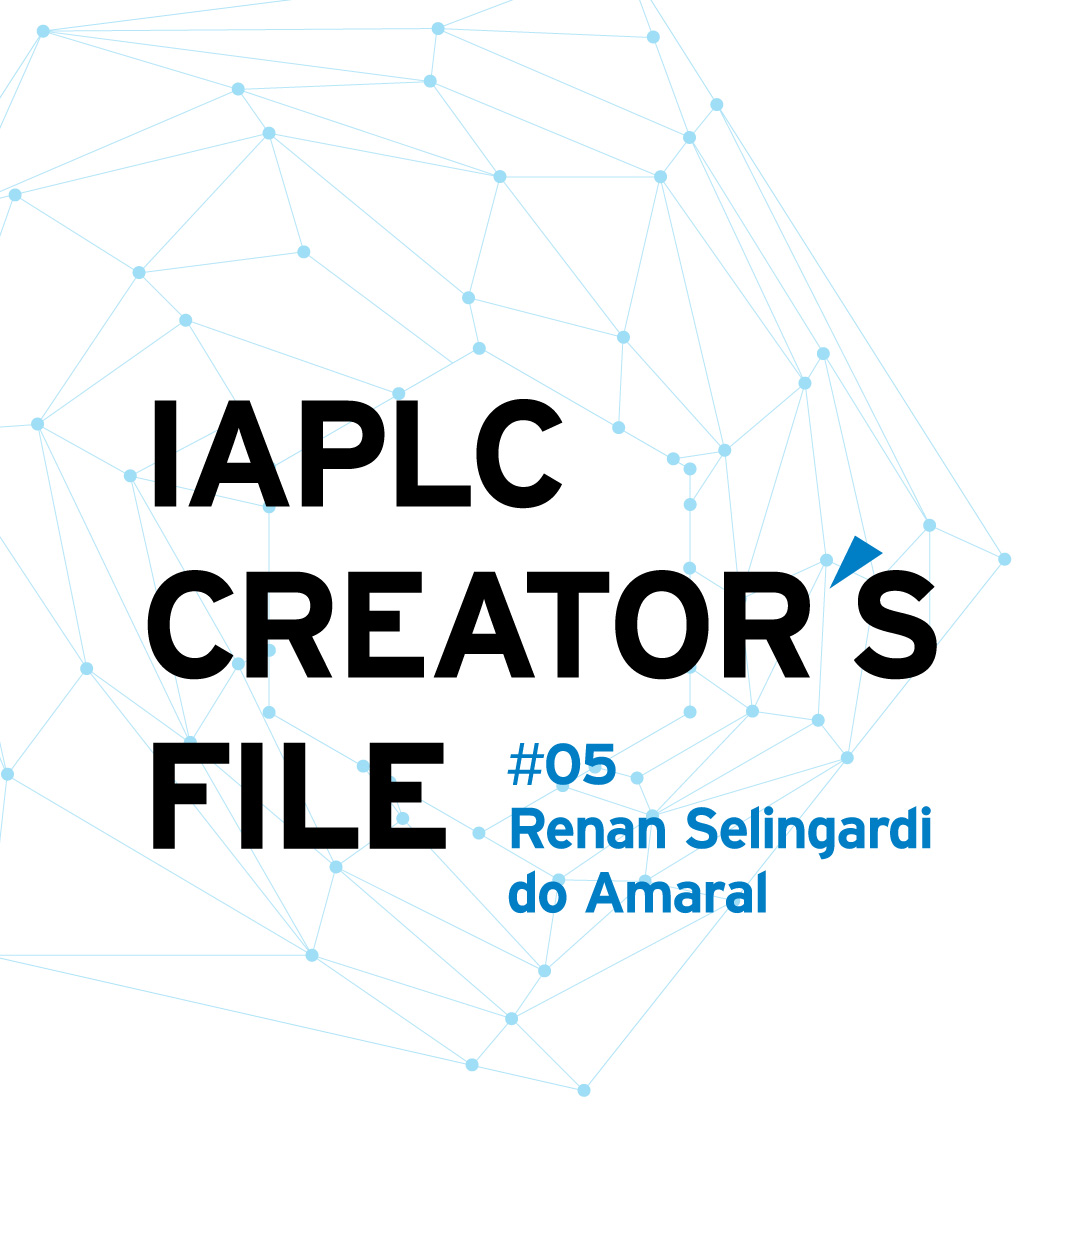 IAPLC CREATOR’S FILE #05 João Luís Pinheiro